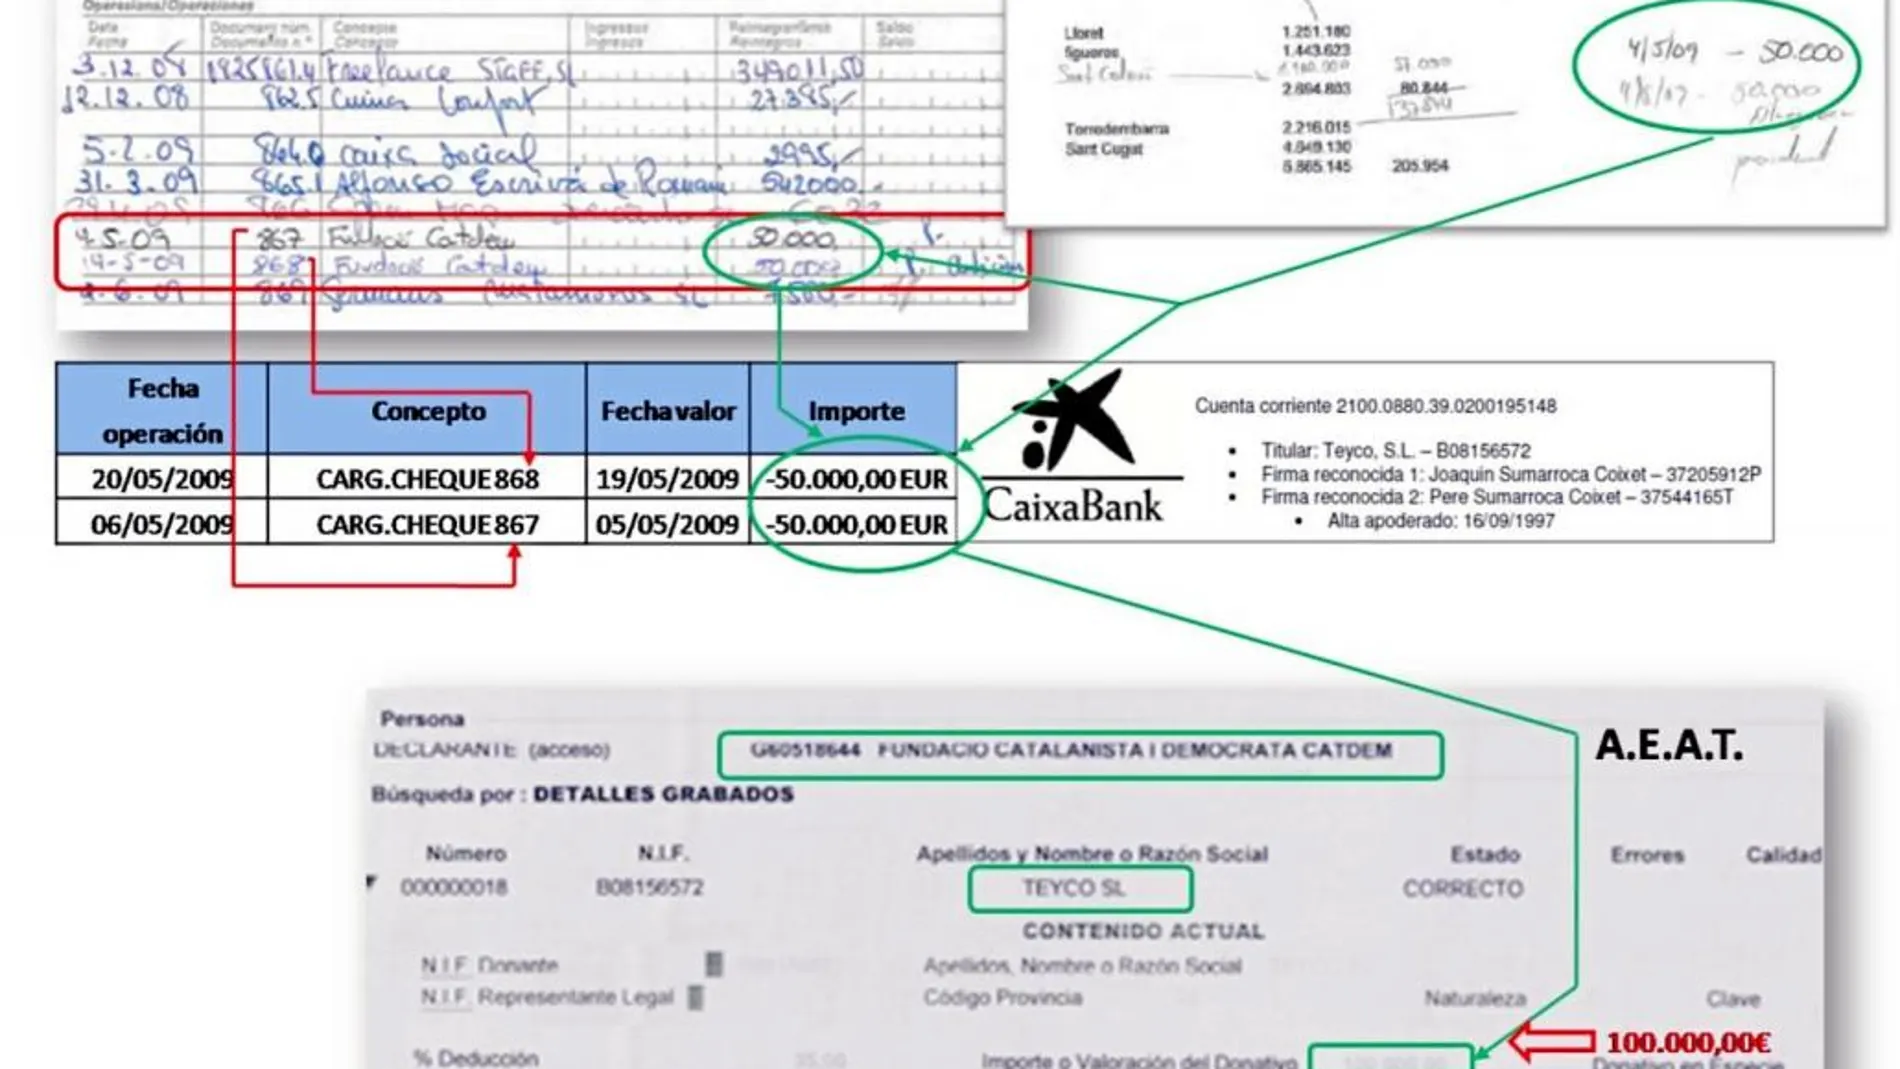 Los extractos bancarios incorporados a la documentación demuestran dos pagos de 50.000 euros de la empresa Teyco, de la familia Sumarroca, a CatDem, la fundación de Convergència el 5 y el 19 de mayo del año 2009